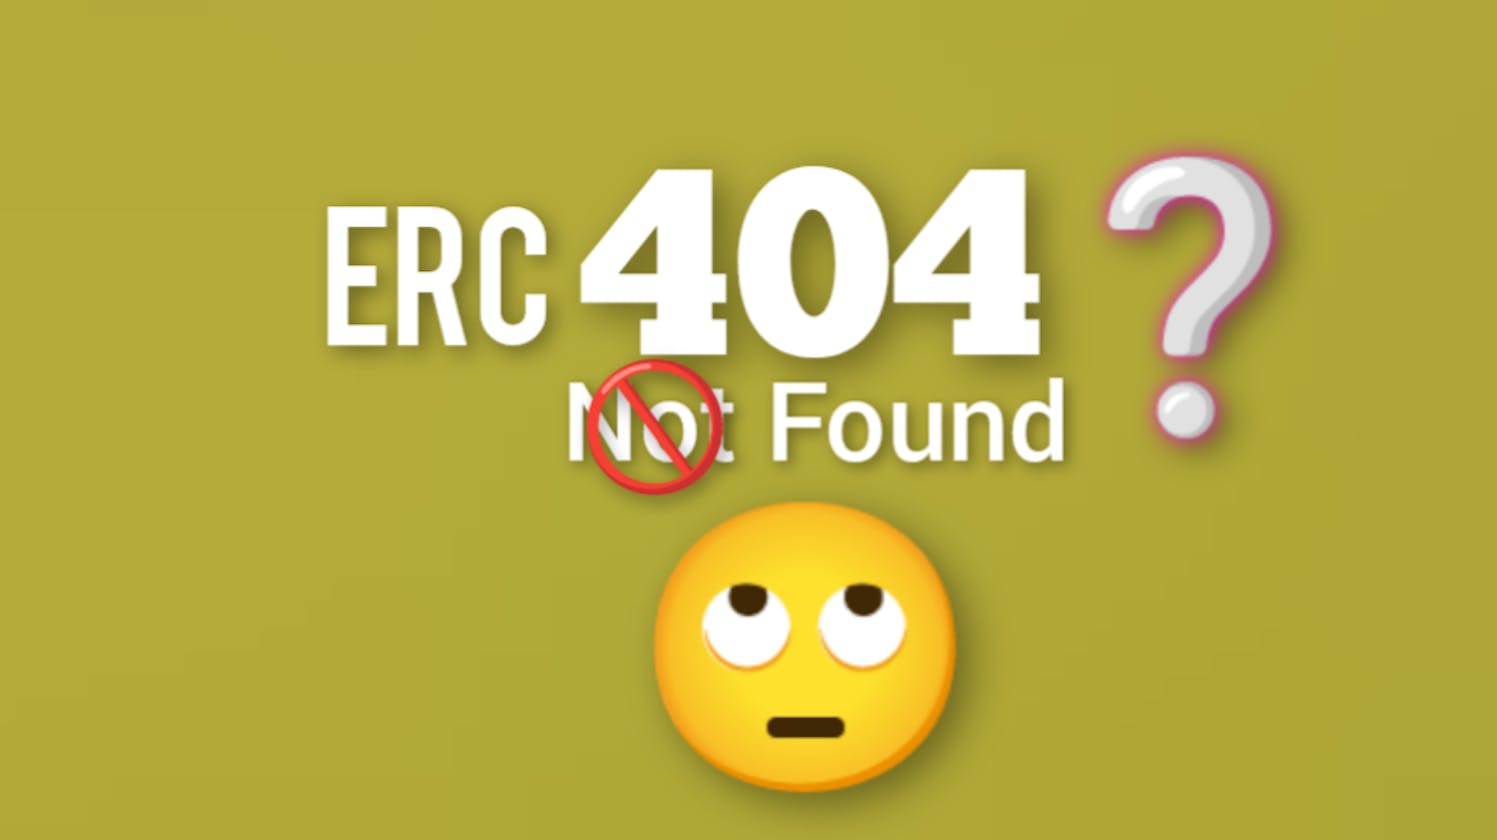 All About ERC-404 token standard